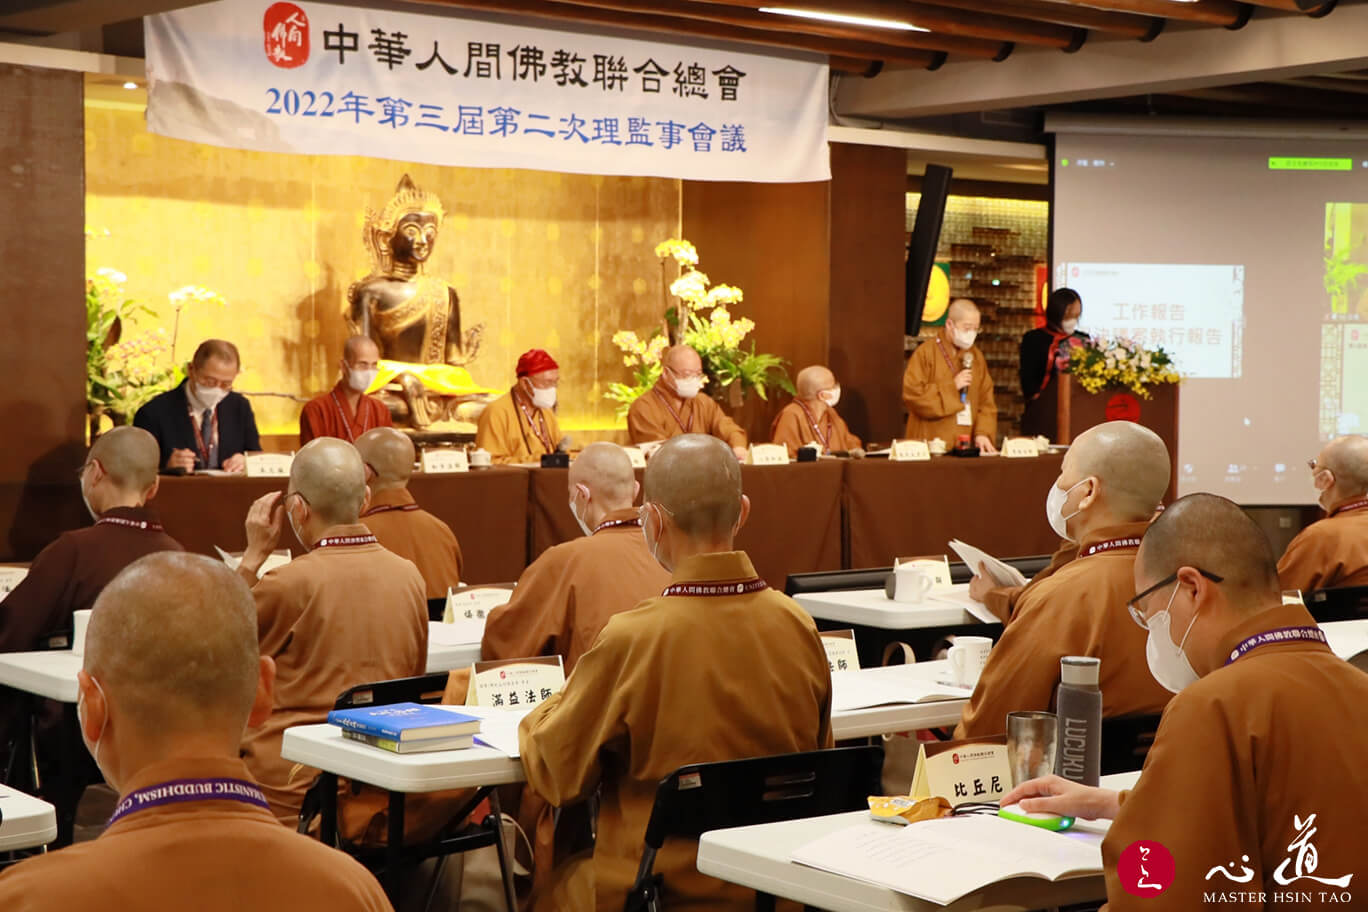 中华人间佛教联合总会 为佛法永续努力-心道法师